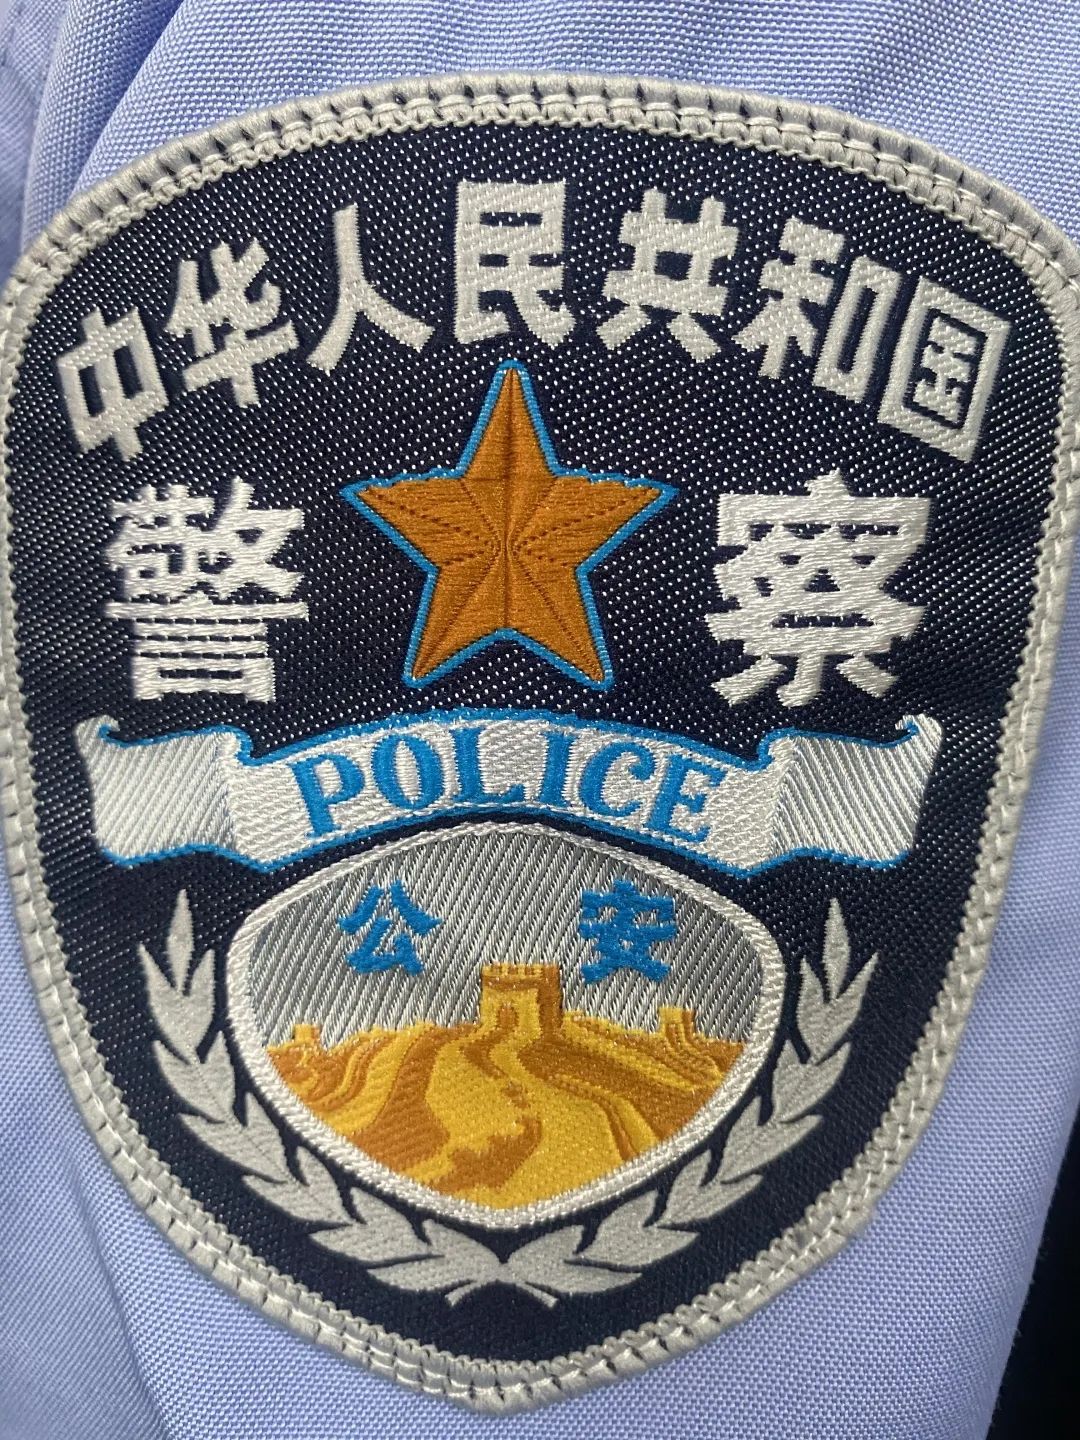 警察胸牌山东图片